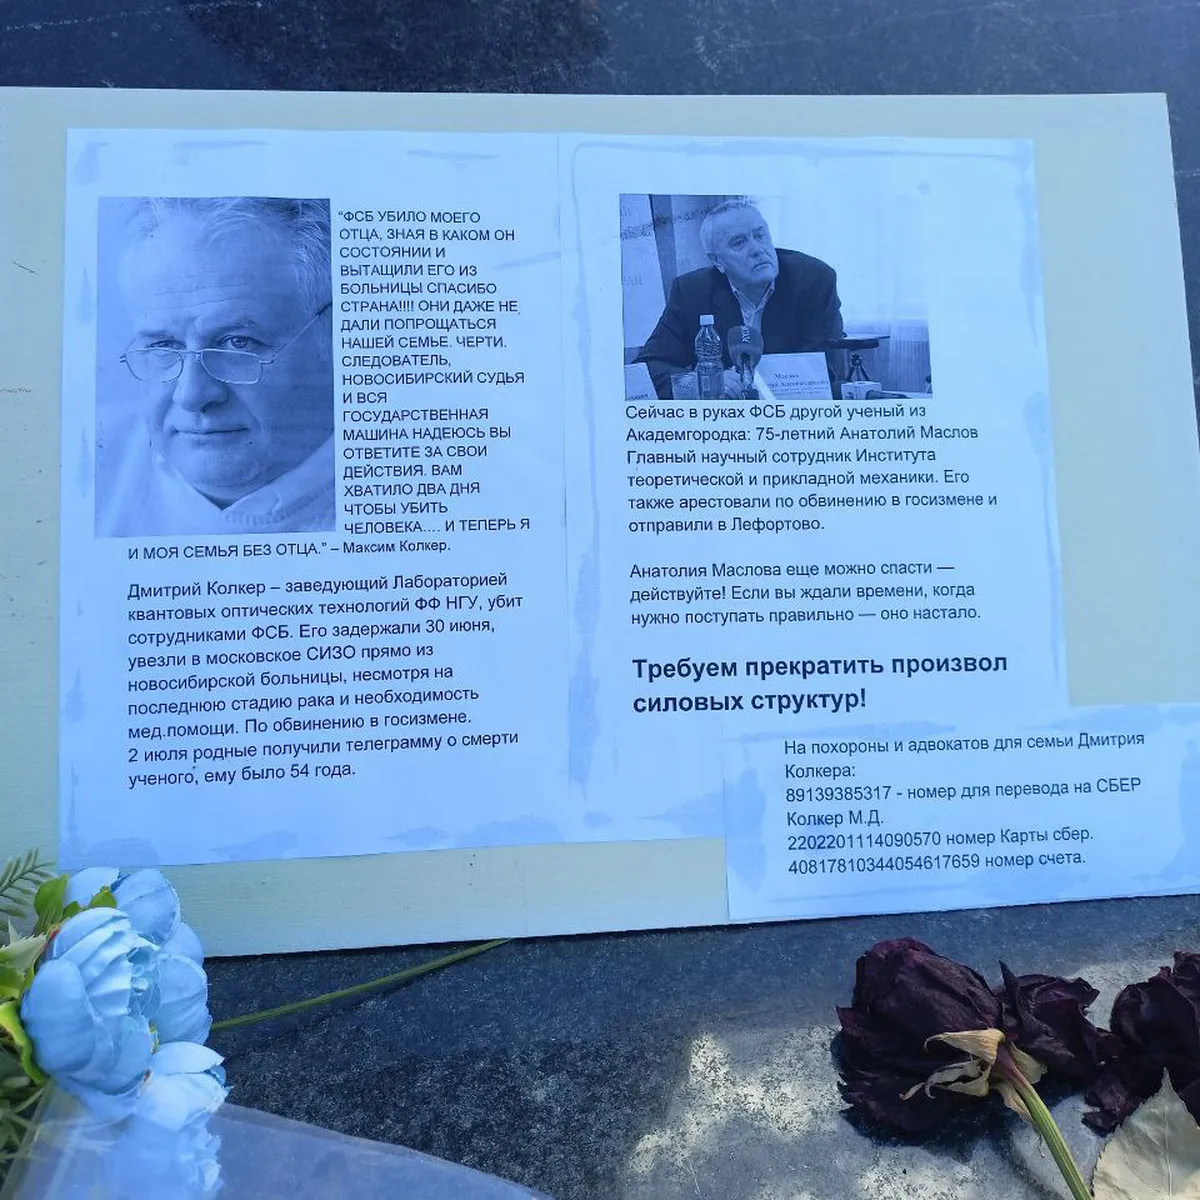 Авторы неформального мемориала Дмитрию Колкеру и Анатолию Маслову прямо обвиняют в случившемся ФСБ